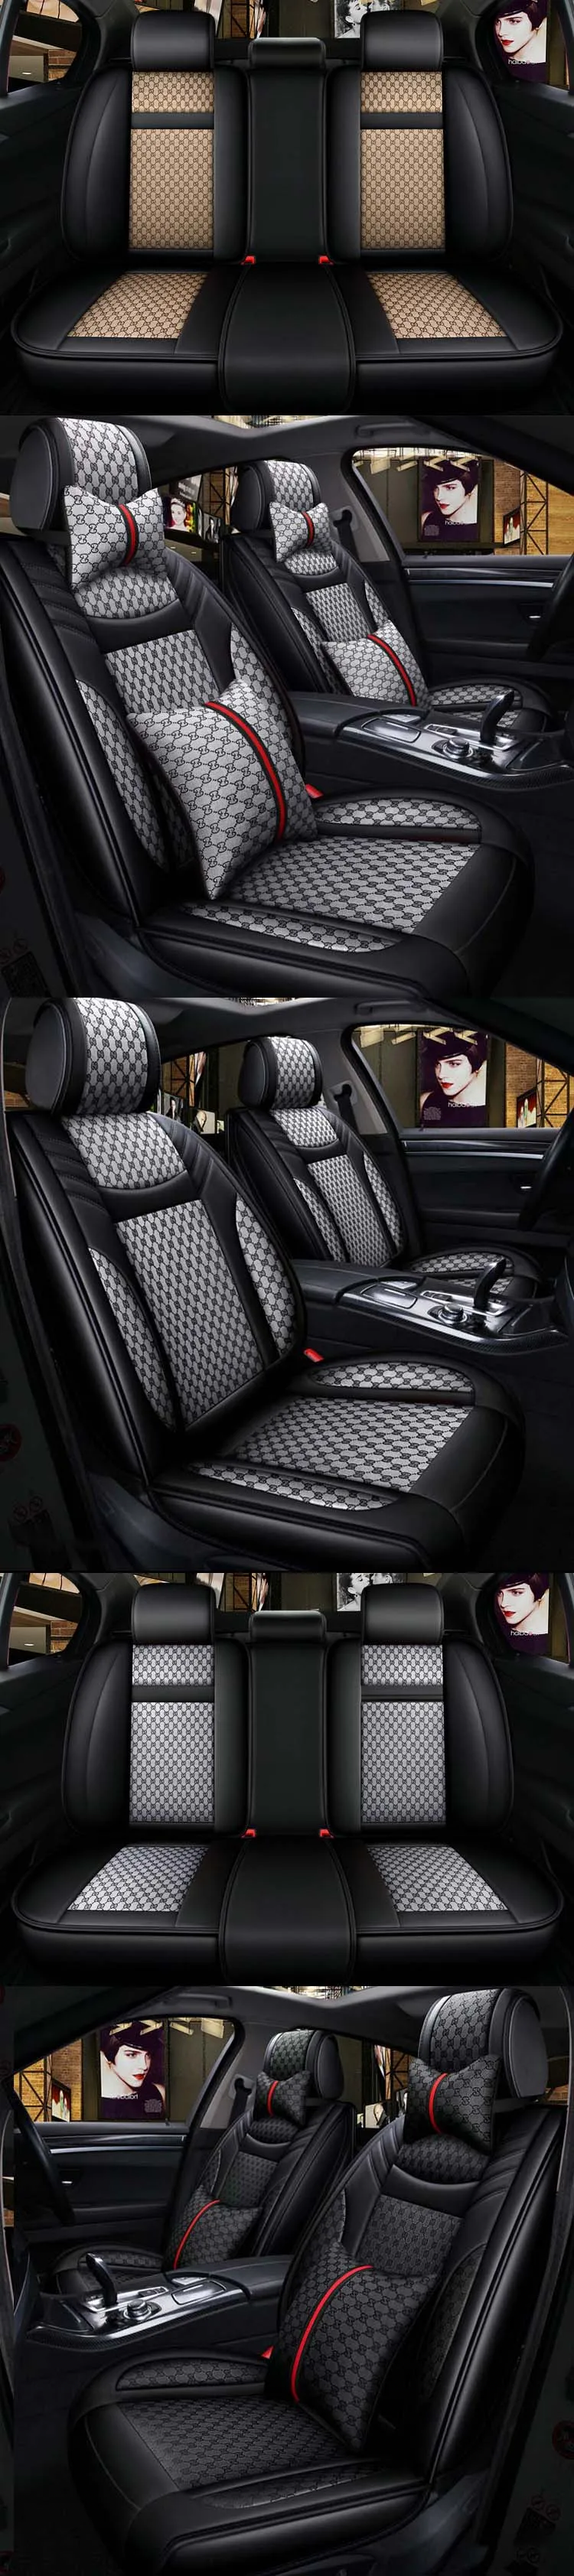 Shenlao универсальный кожаный чехол для сидений автомобиля для Infiniti FX37 FX 50 2011 аксессуары роскошные чехлы для сидений автомобиля водонепроницаемый